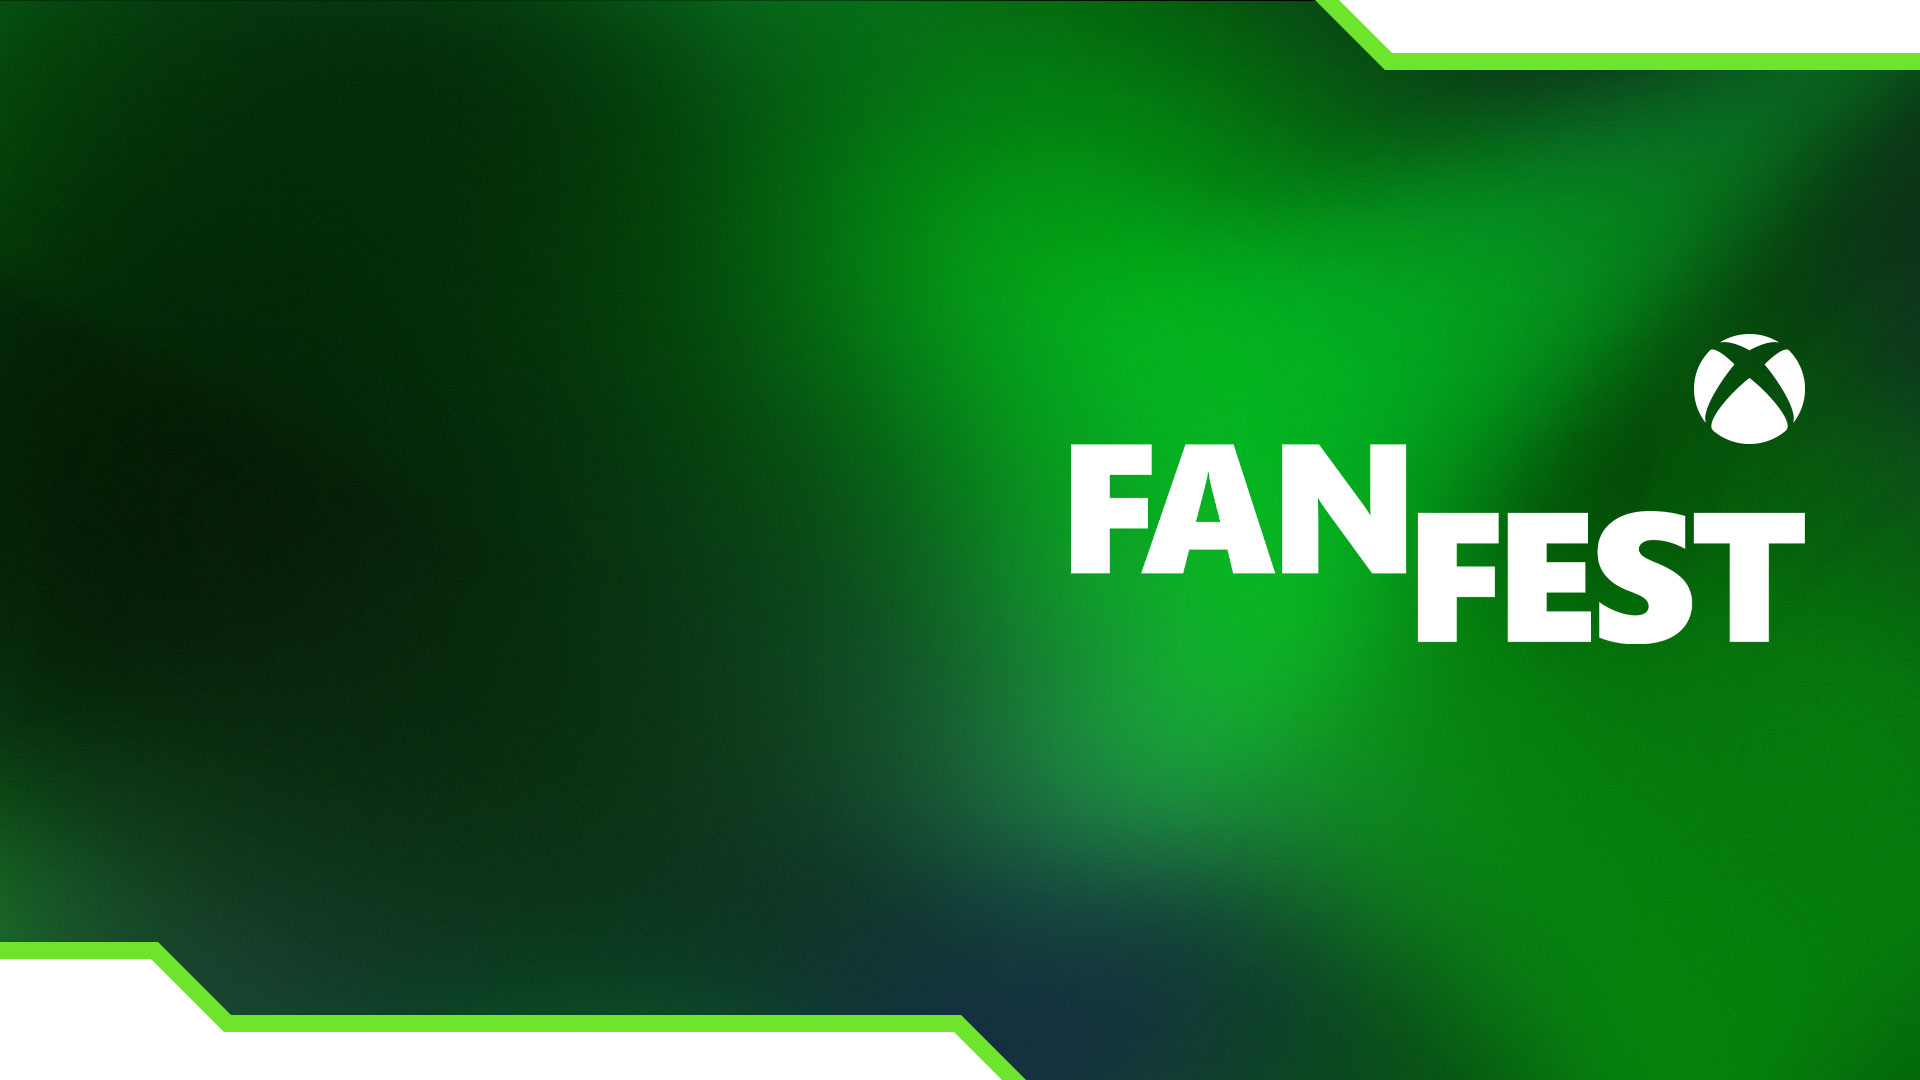 Xbox-ympyrä, FanFest ja vihreä liukuvärjäys.